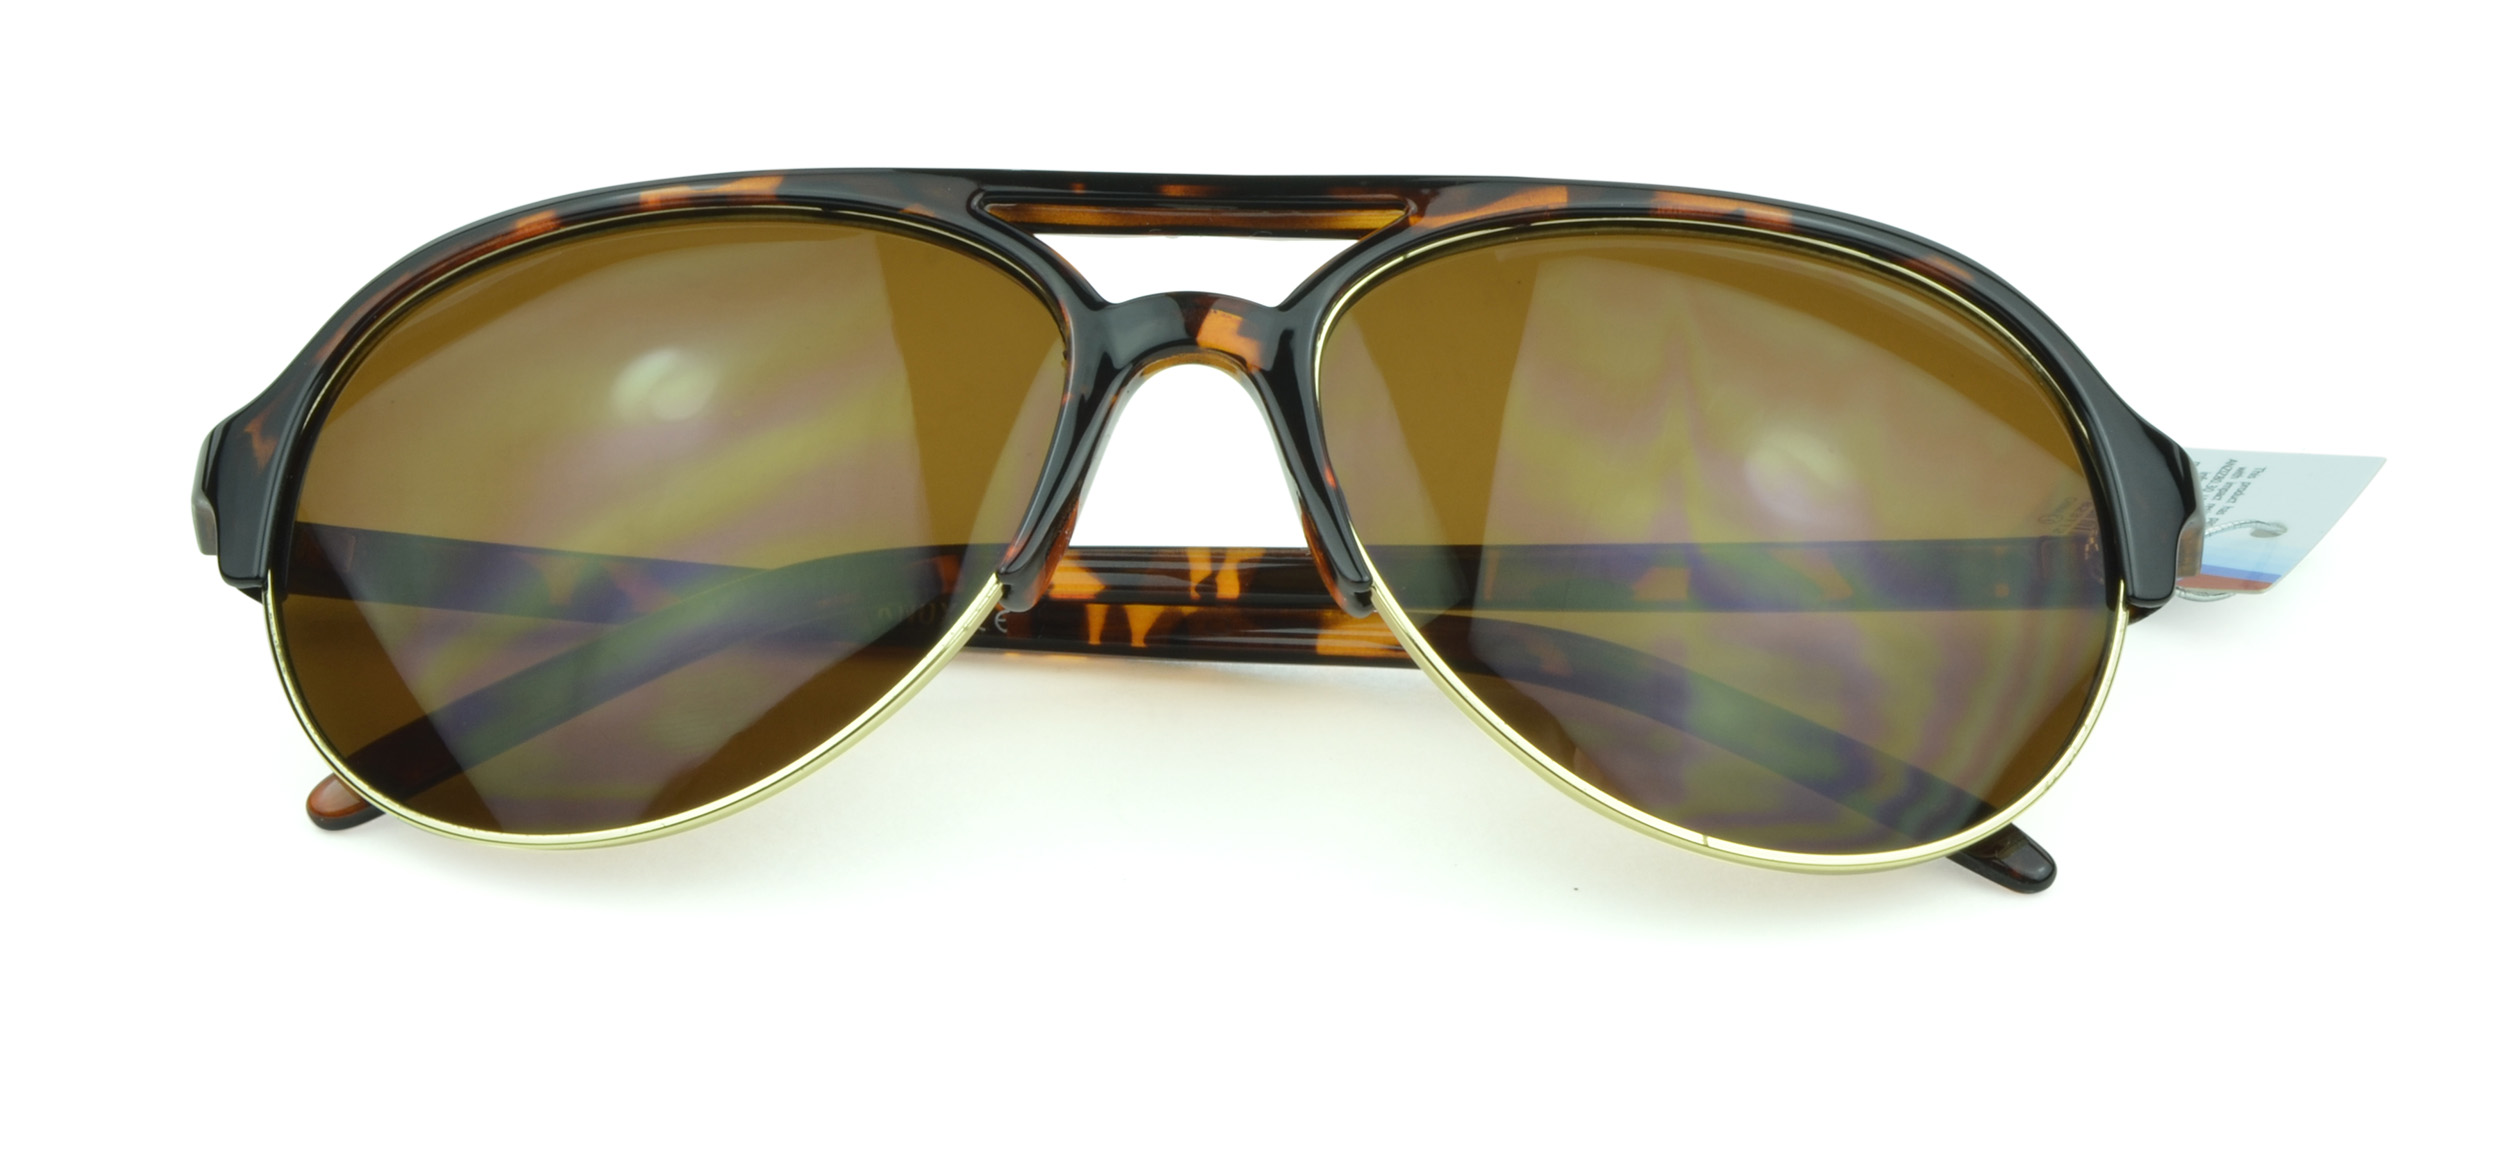 Belle Donne - Oversized Aviator Style Unisex Sunglasses- Tortoise